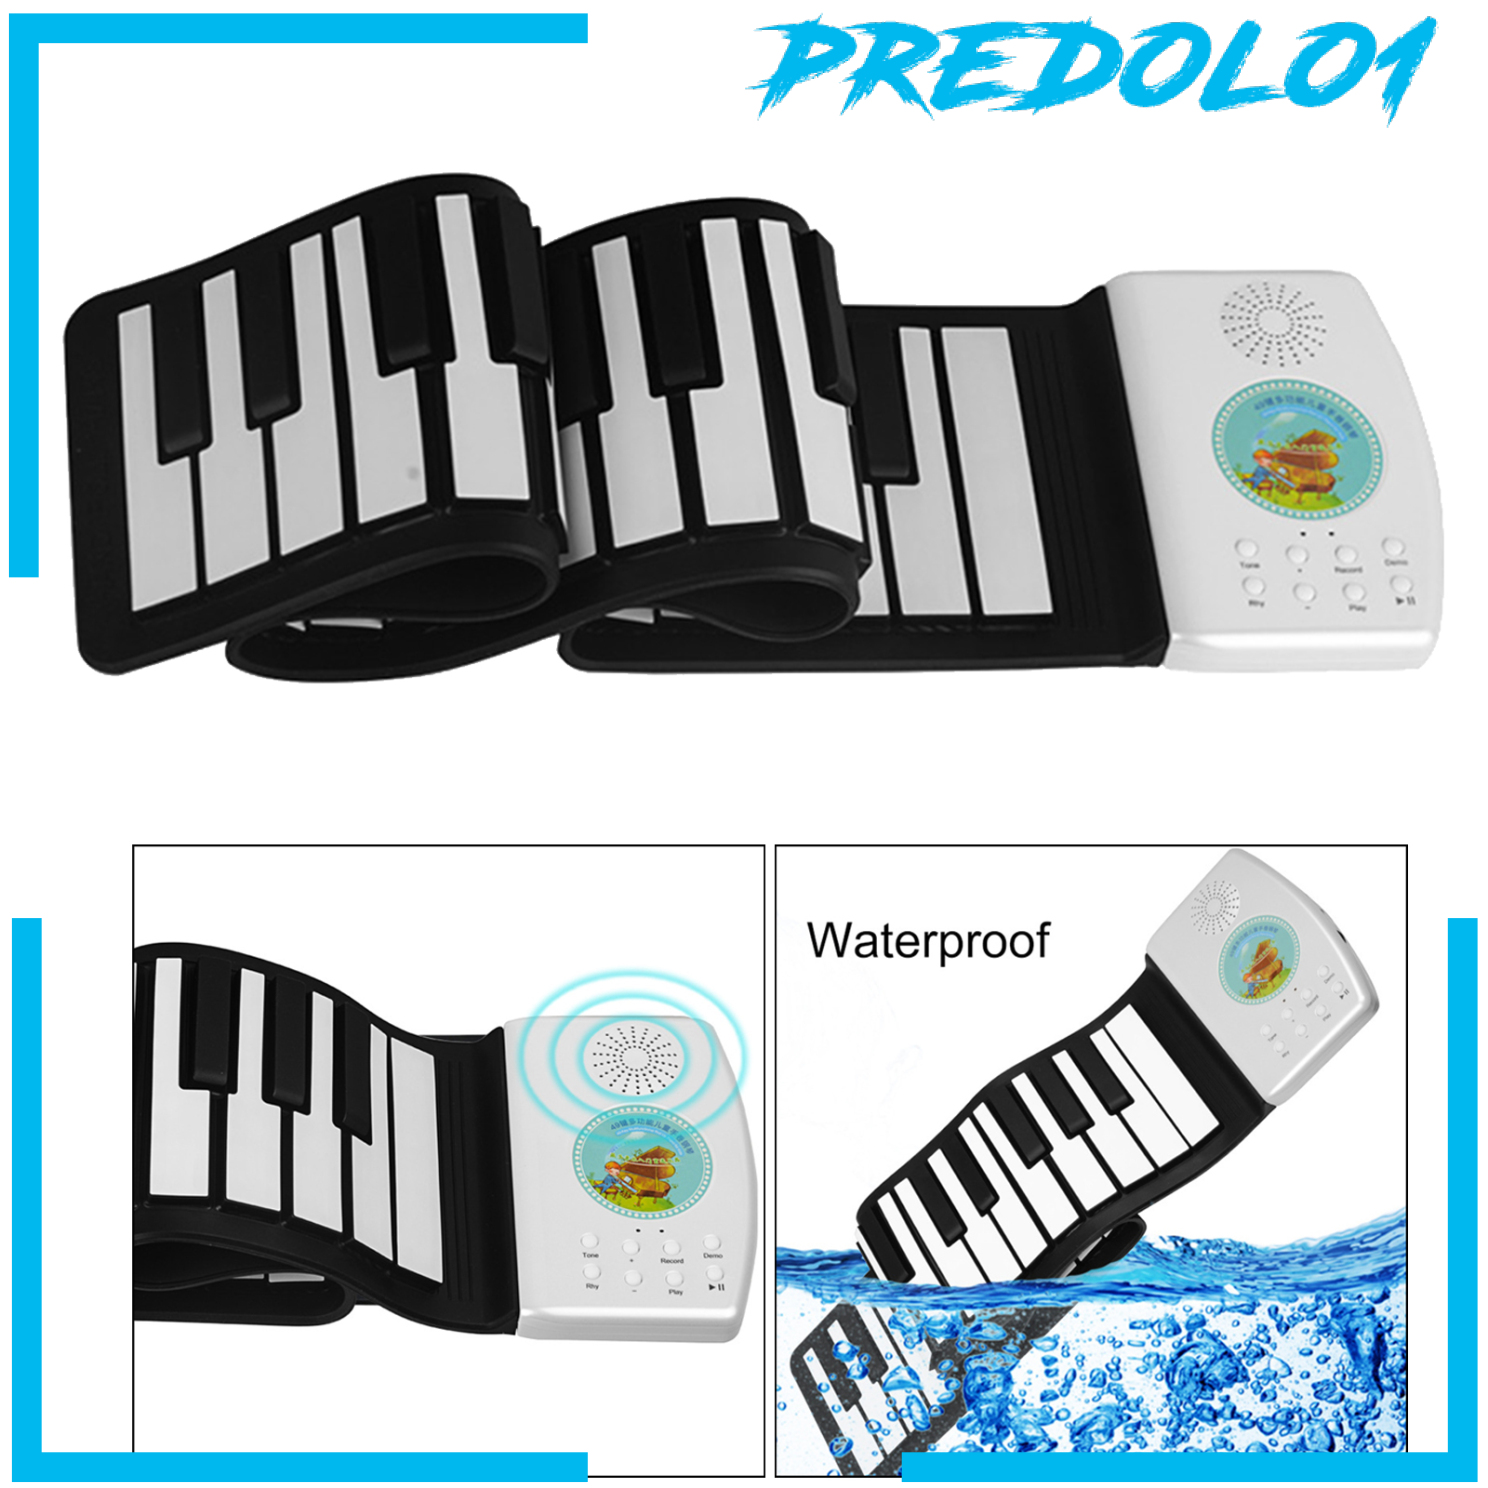 Đàn Piano Cuộn Điện Tử Predolo1